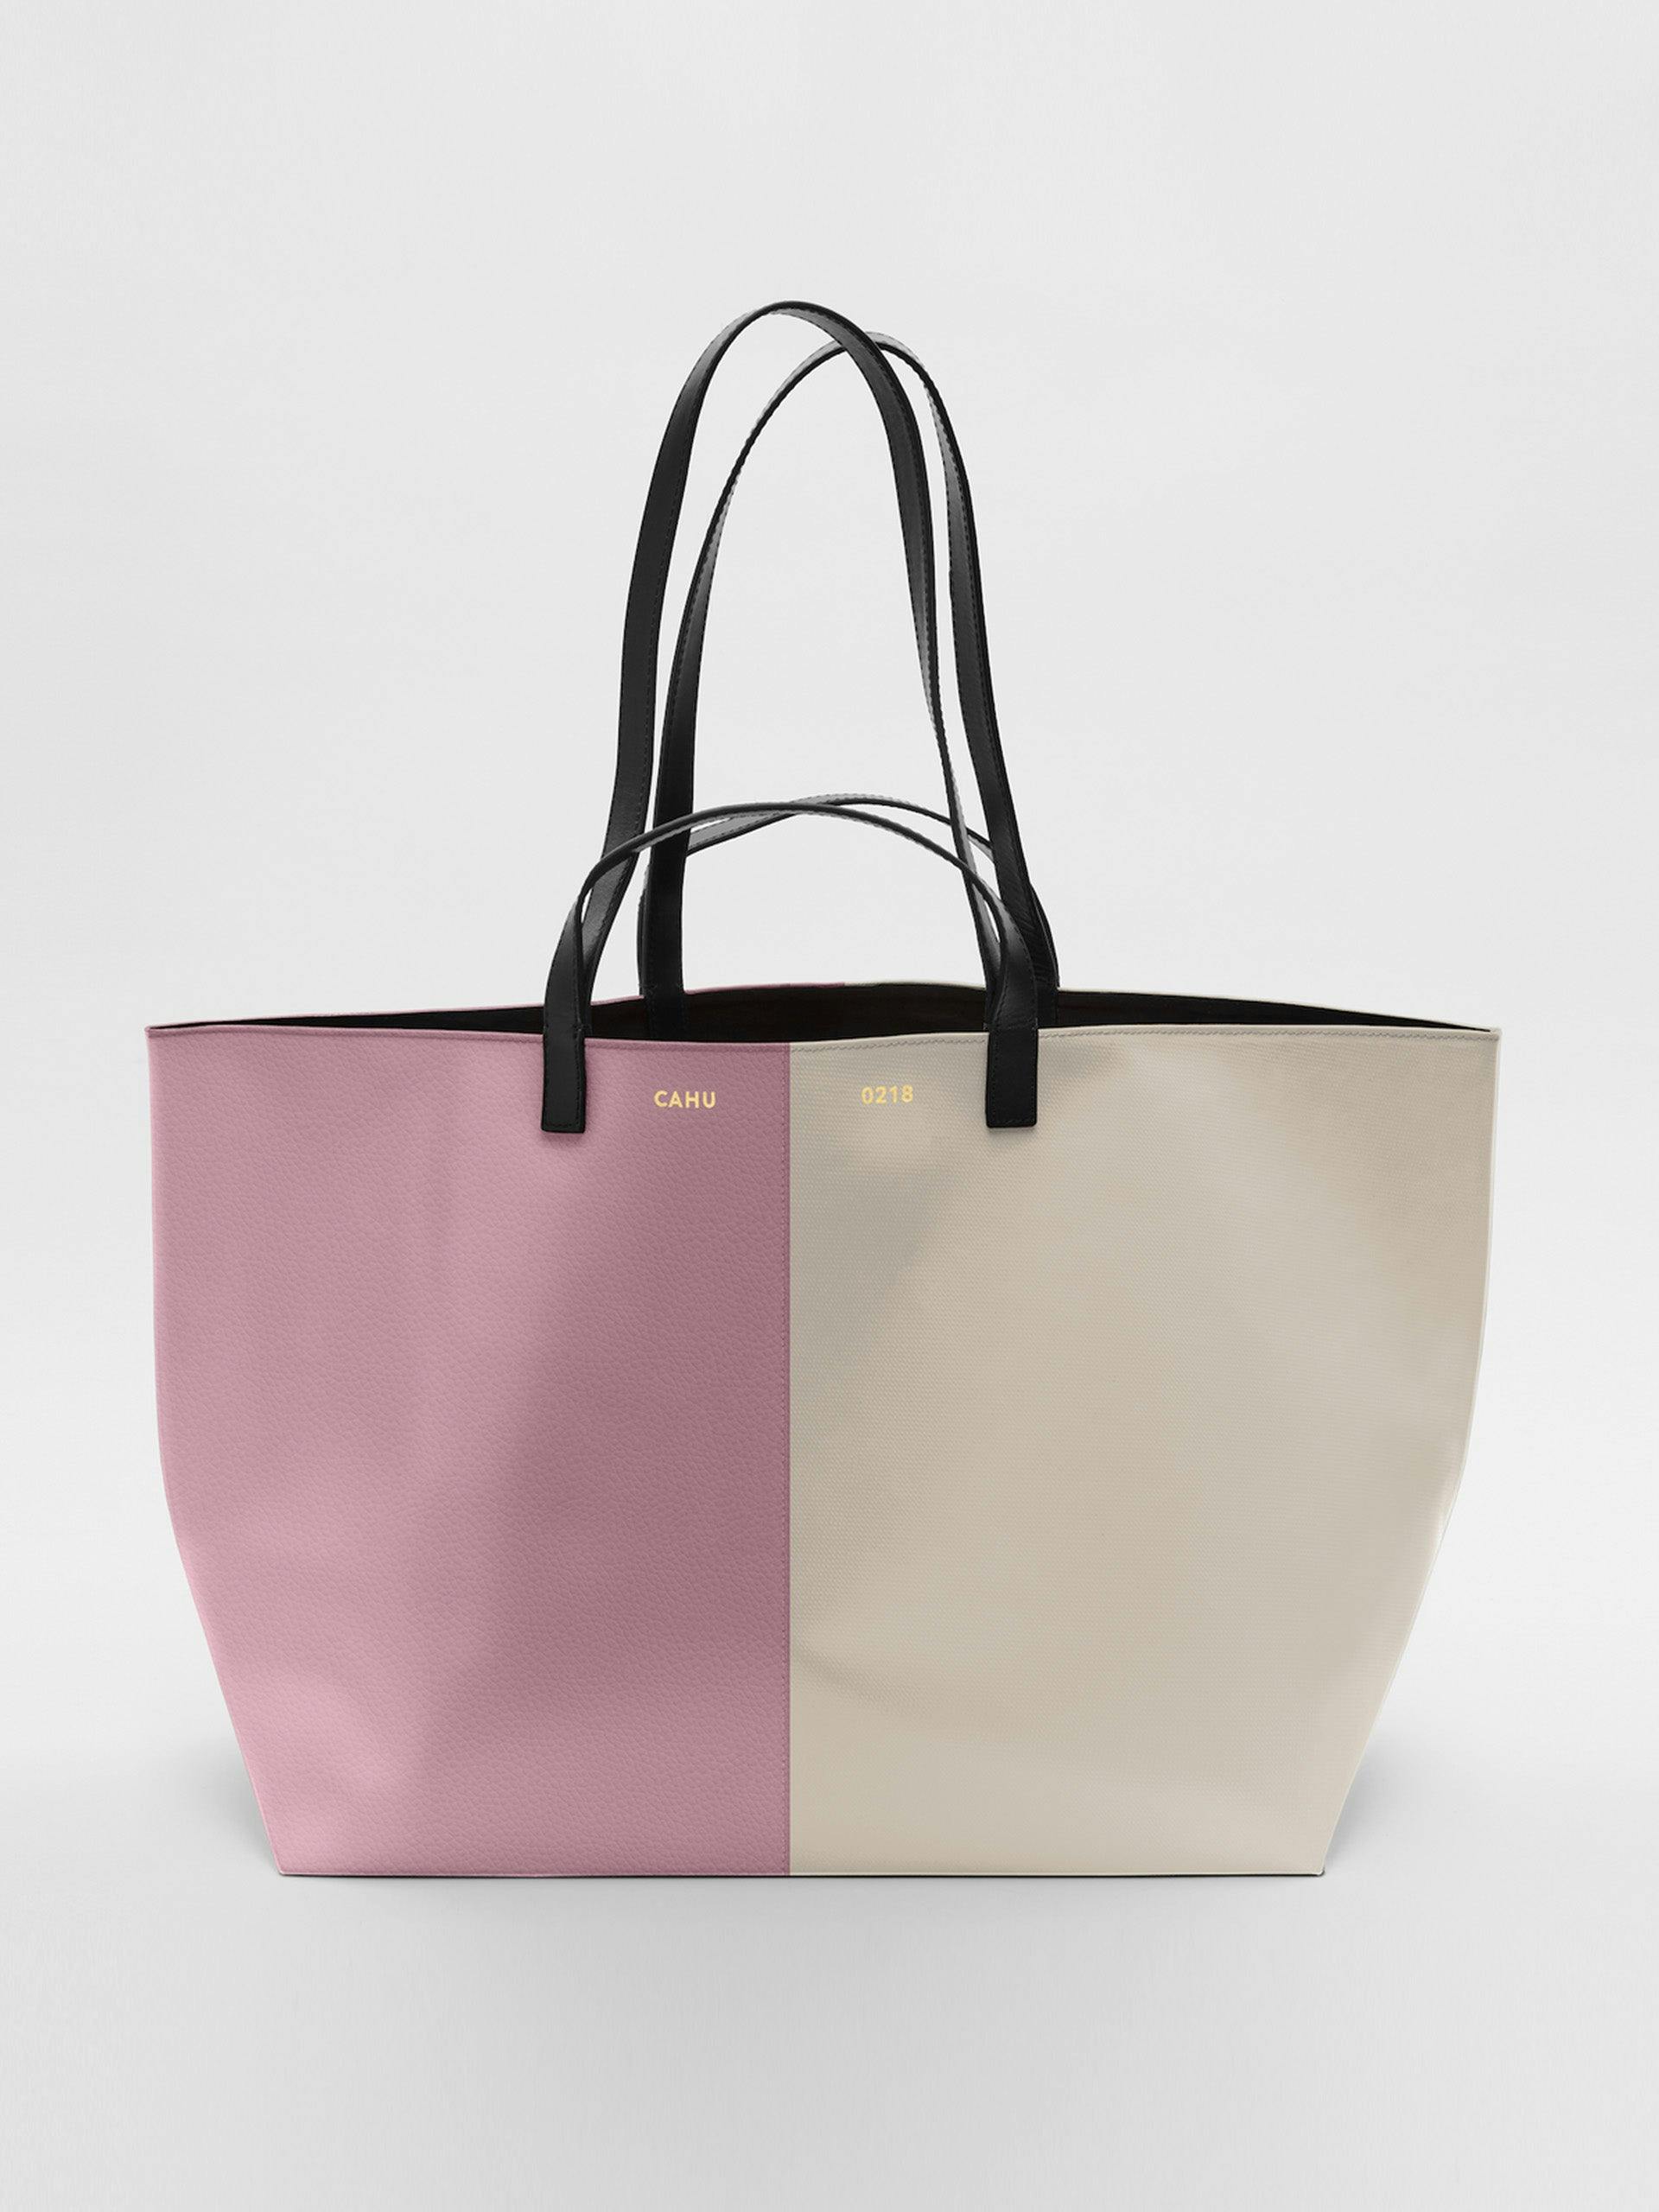 The Pratique Leather PVC pink bag